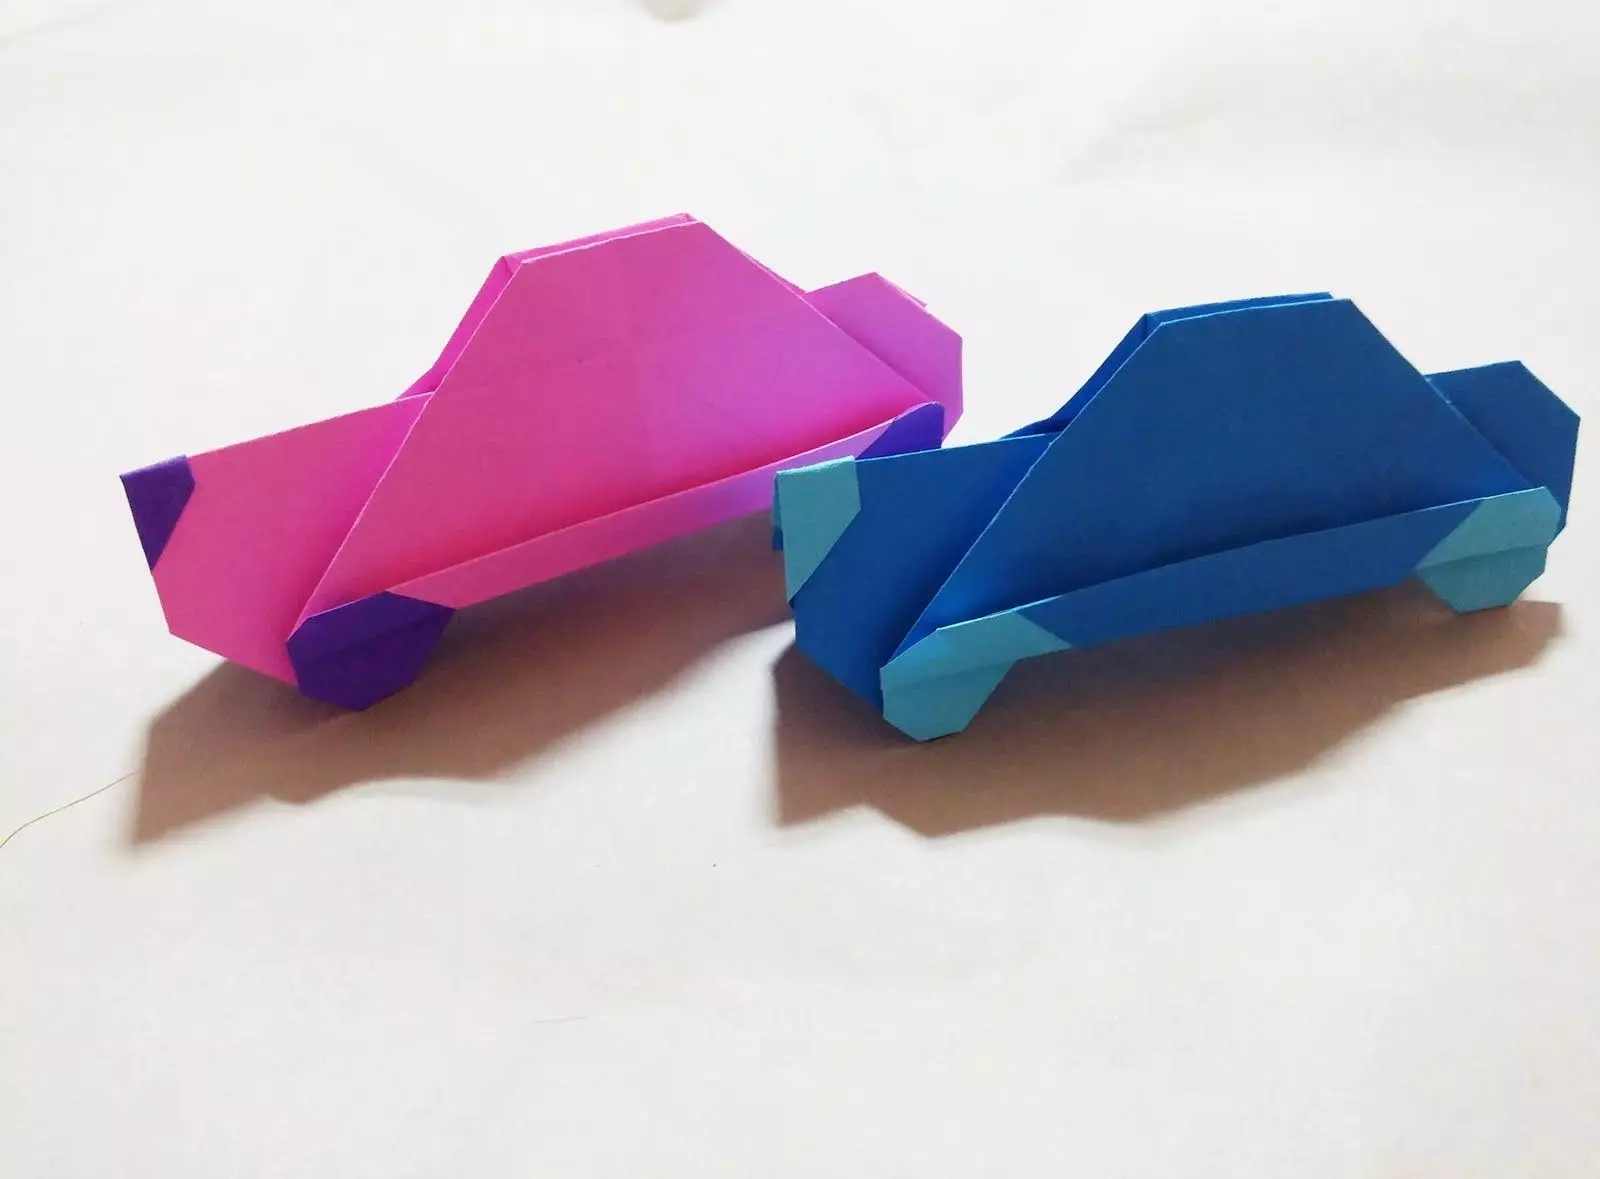 Origami lati inu iwe fun awọn ọmọde 5-6 ọdun atijọ:-ni-igbese-ni-ọna, awọn iṣẹ ti o rọrun pẹlu ọwọ ara wọn. Bi o rọrun lati ṣe kilasi ti o gbona lori awọn olubere kilasi? 26988_51